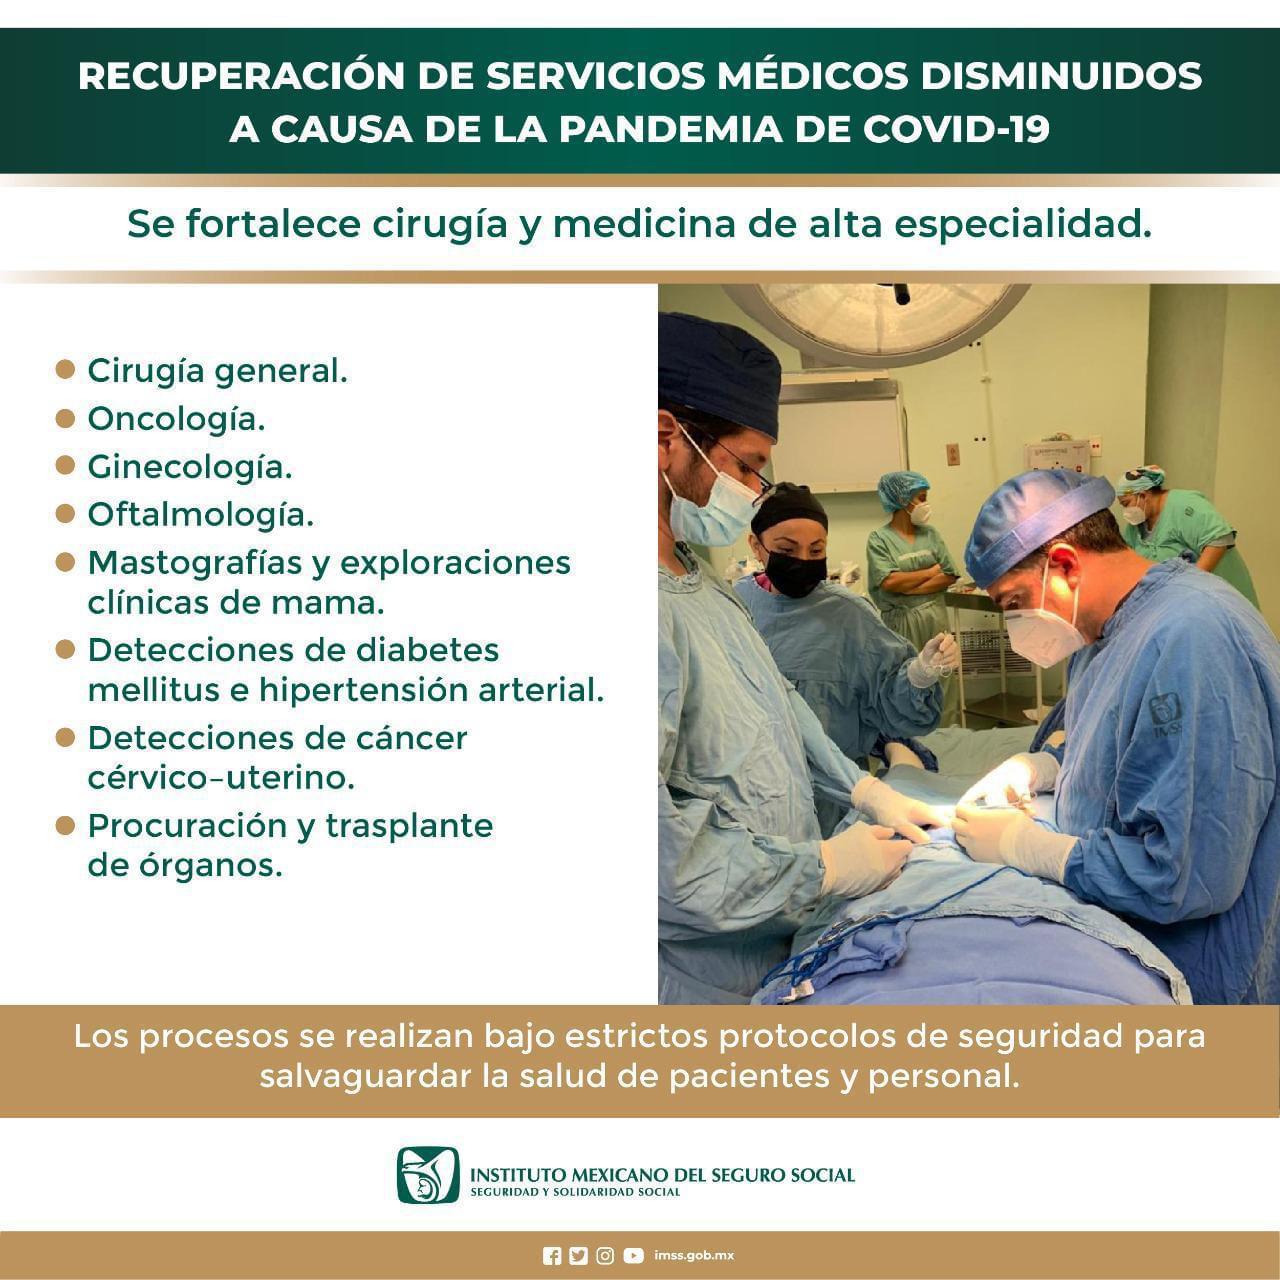 Hospitales de Coatzacoalcos y Minatitlán comienzan a recuperar servicios médicos